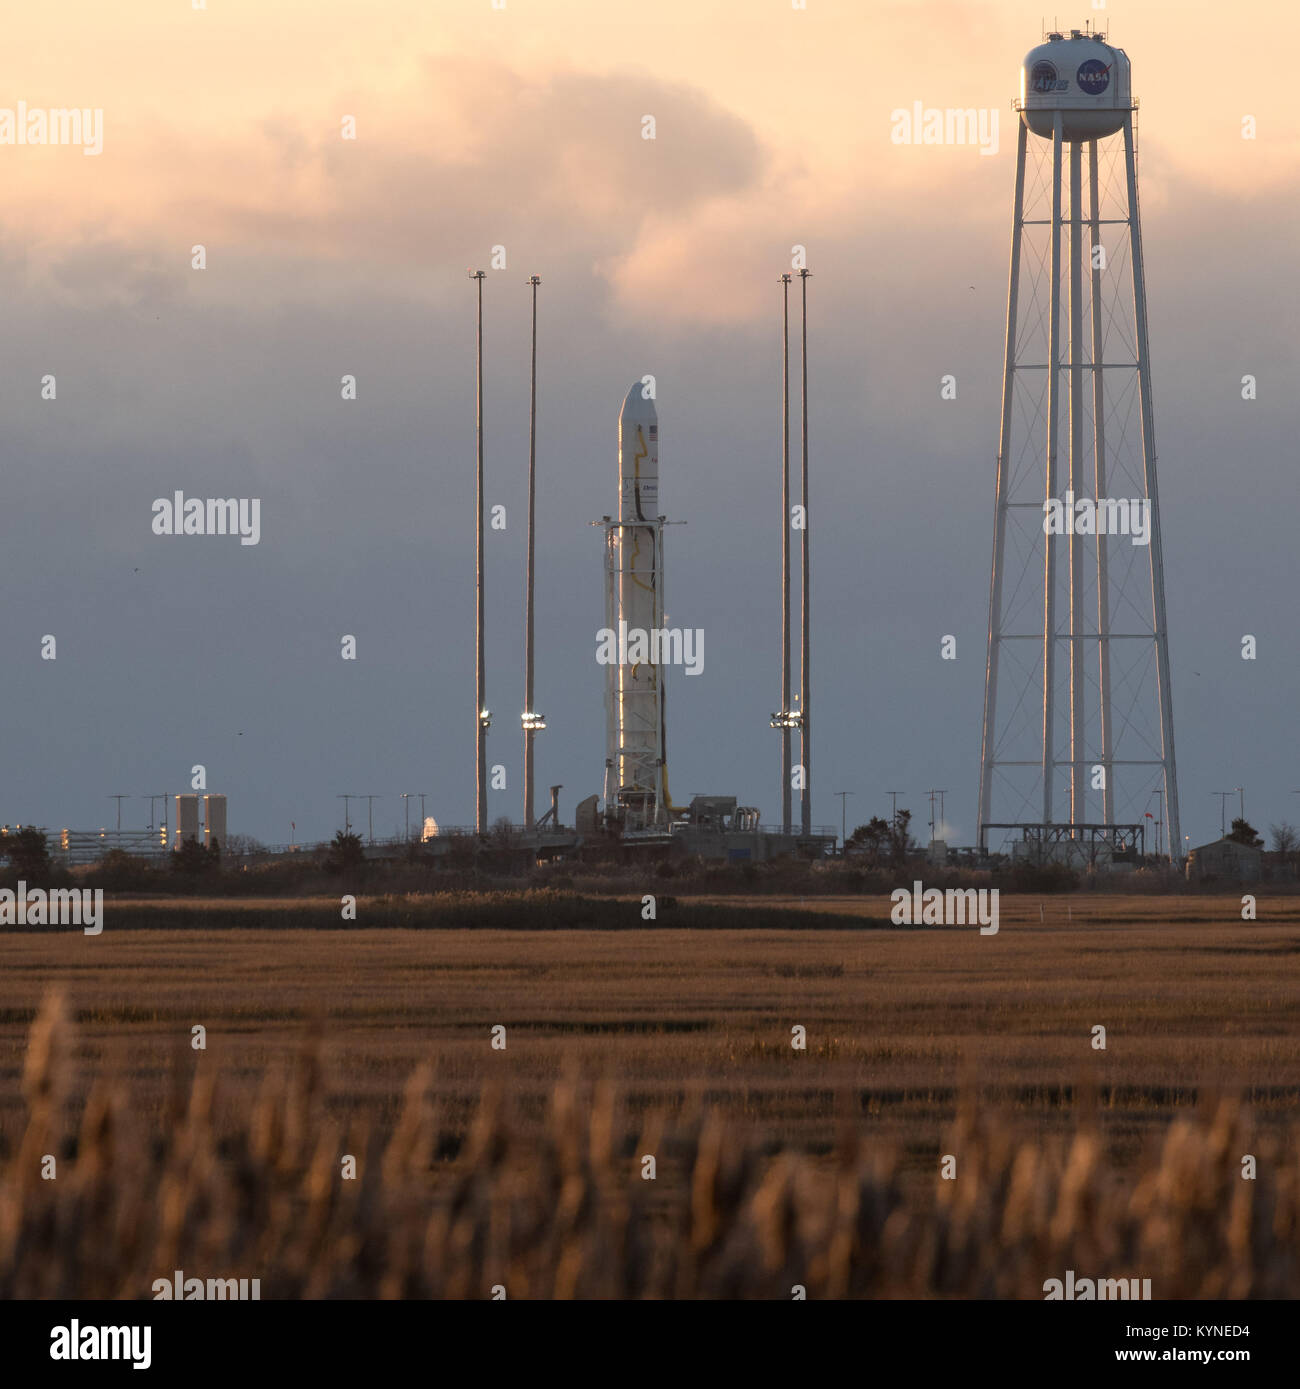 El orbital ATK Antares cohete, con el Cygnus naves espaciales a bordo, es visto en Launch Pad-0A, el sábado 11 de noviembre de 2017 de la NASA Wallops Flight Facility en Virginia. ATK Orbital la octava misión de reabastecimiento de la carga contratada con la NASA para la Estación Espacial Internacional entregará aproximadamente 7.400 libras de ciencia e investigación, la tripulación de suministros y equipos del vehículo al laboratorio orbital y su tripulación. Crédito de la foto: (NASA/Bill Ingalls) Foto de stock